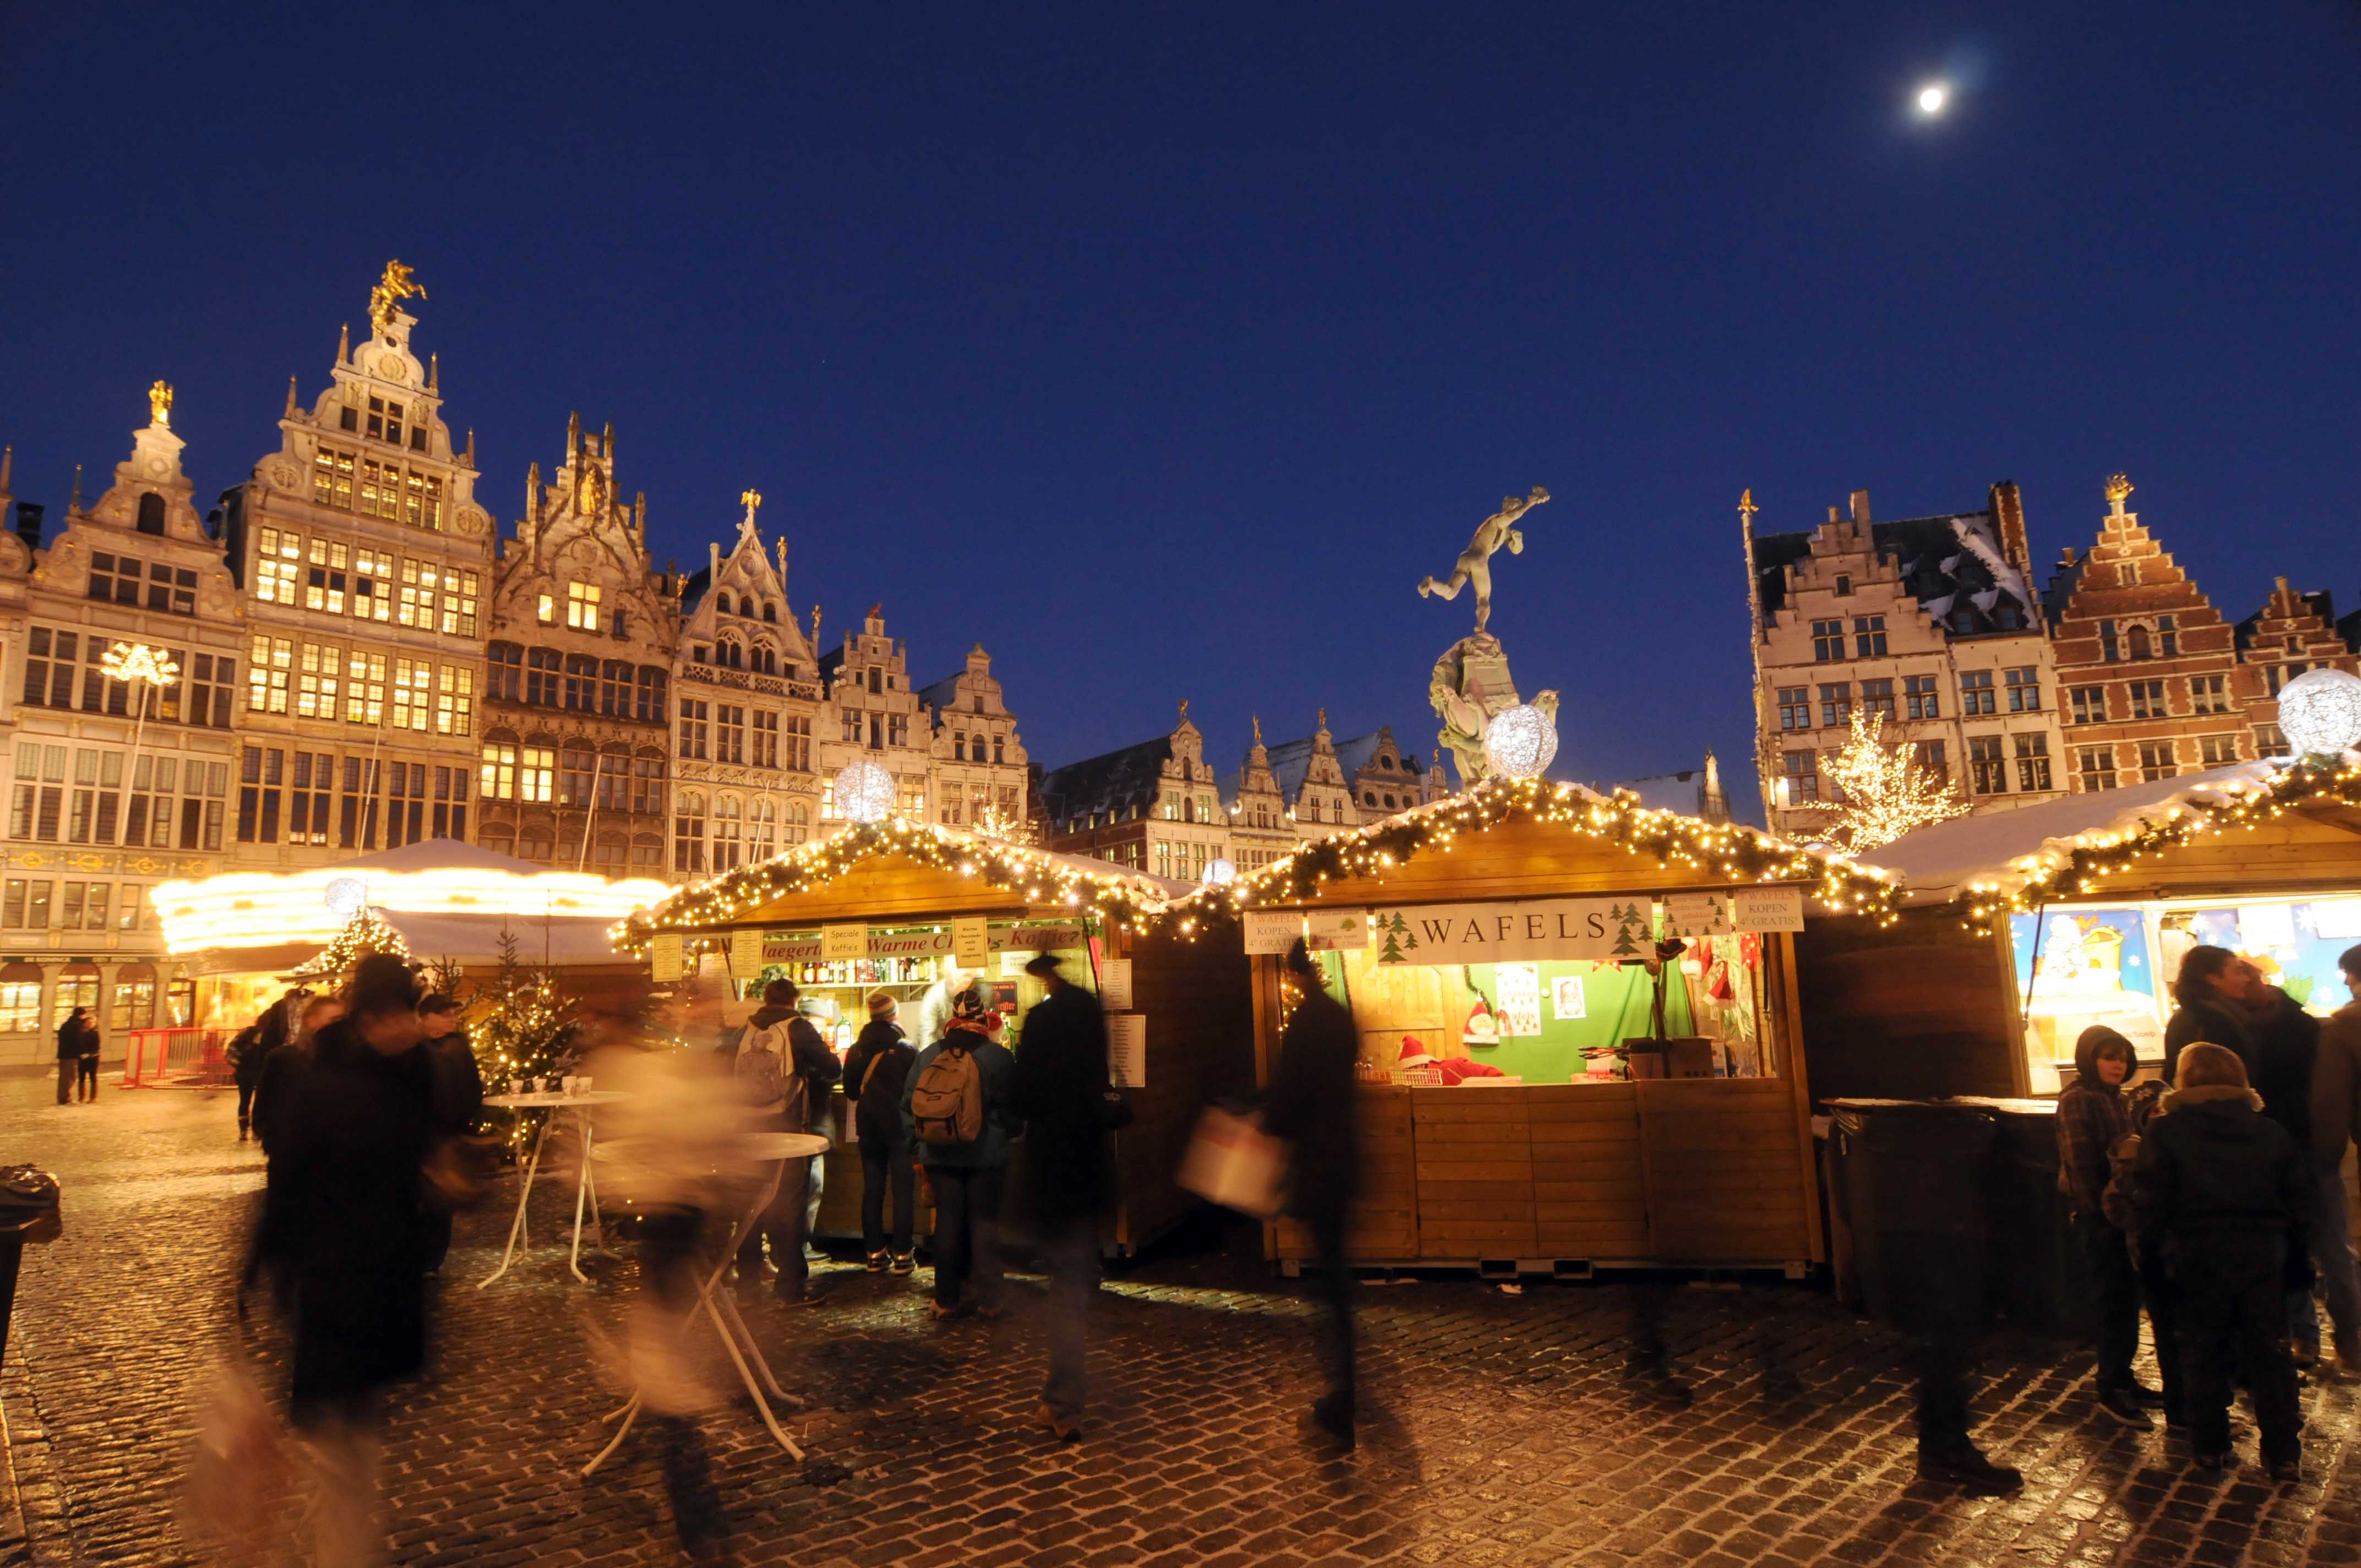 Festive market in Antwerp